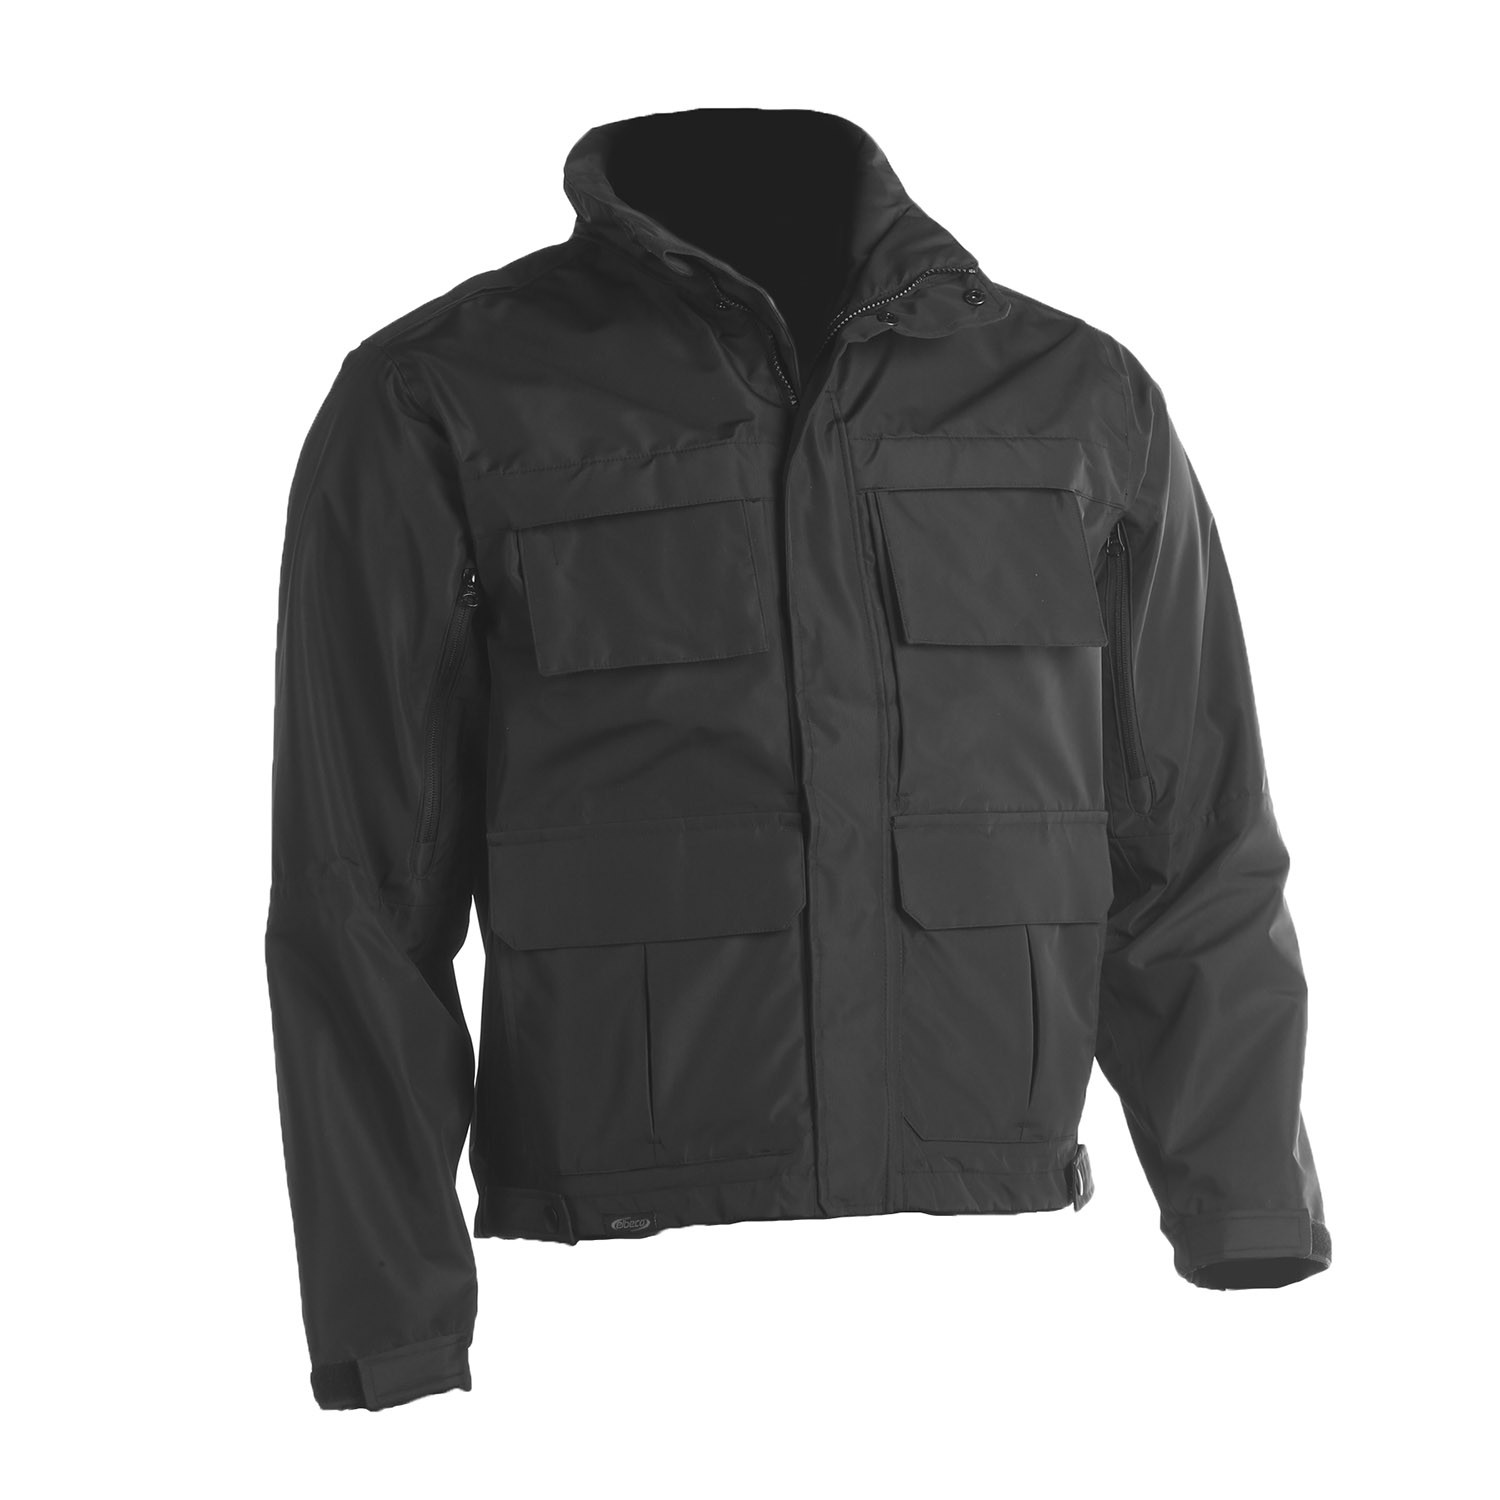 Elbeco Shield Duty Jacket - Jackets - Outerwear - Non-Contract Uniforms